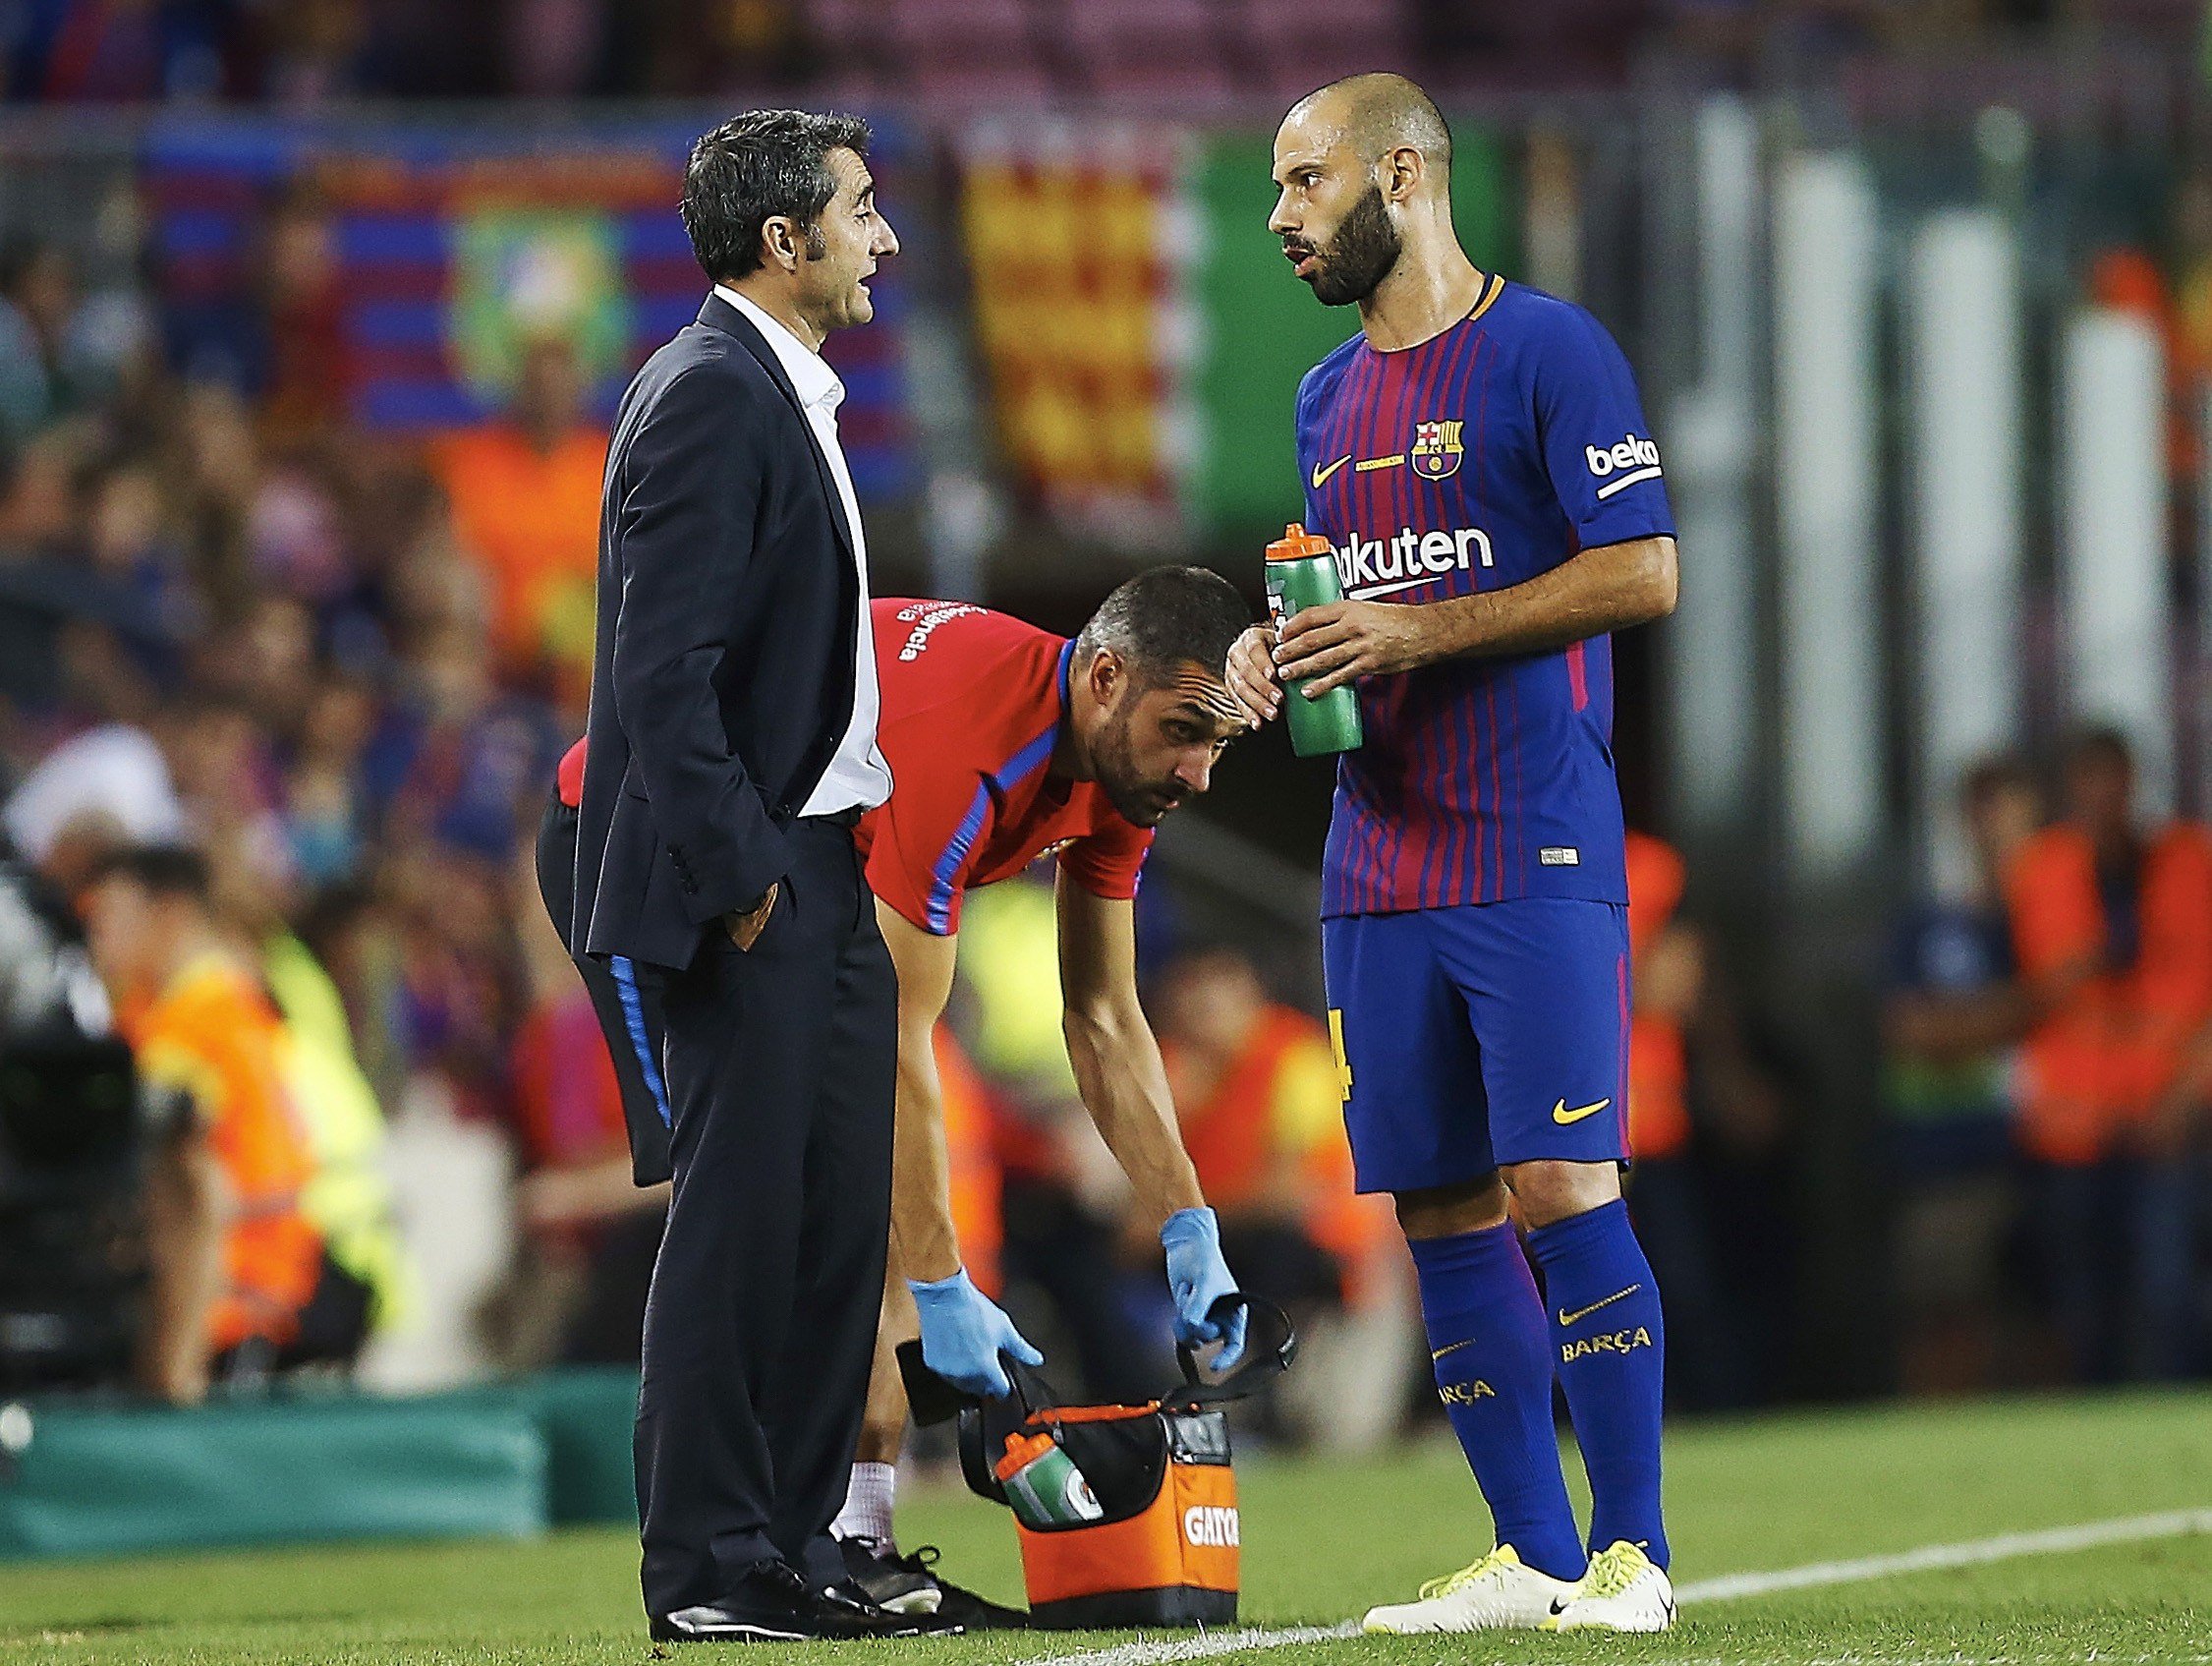 La lesió de Mascherano deixa el Barça contra les cordes